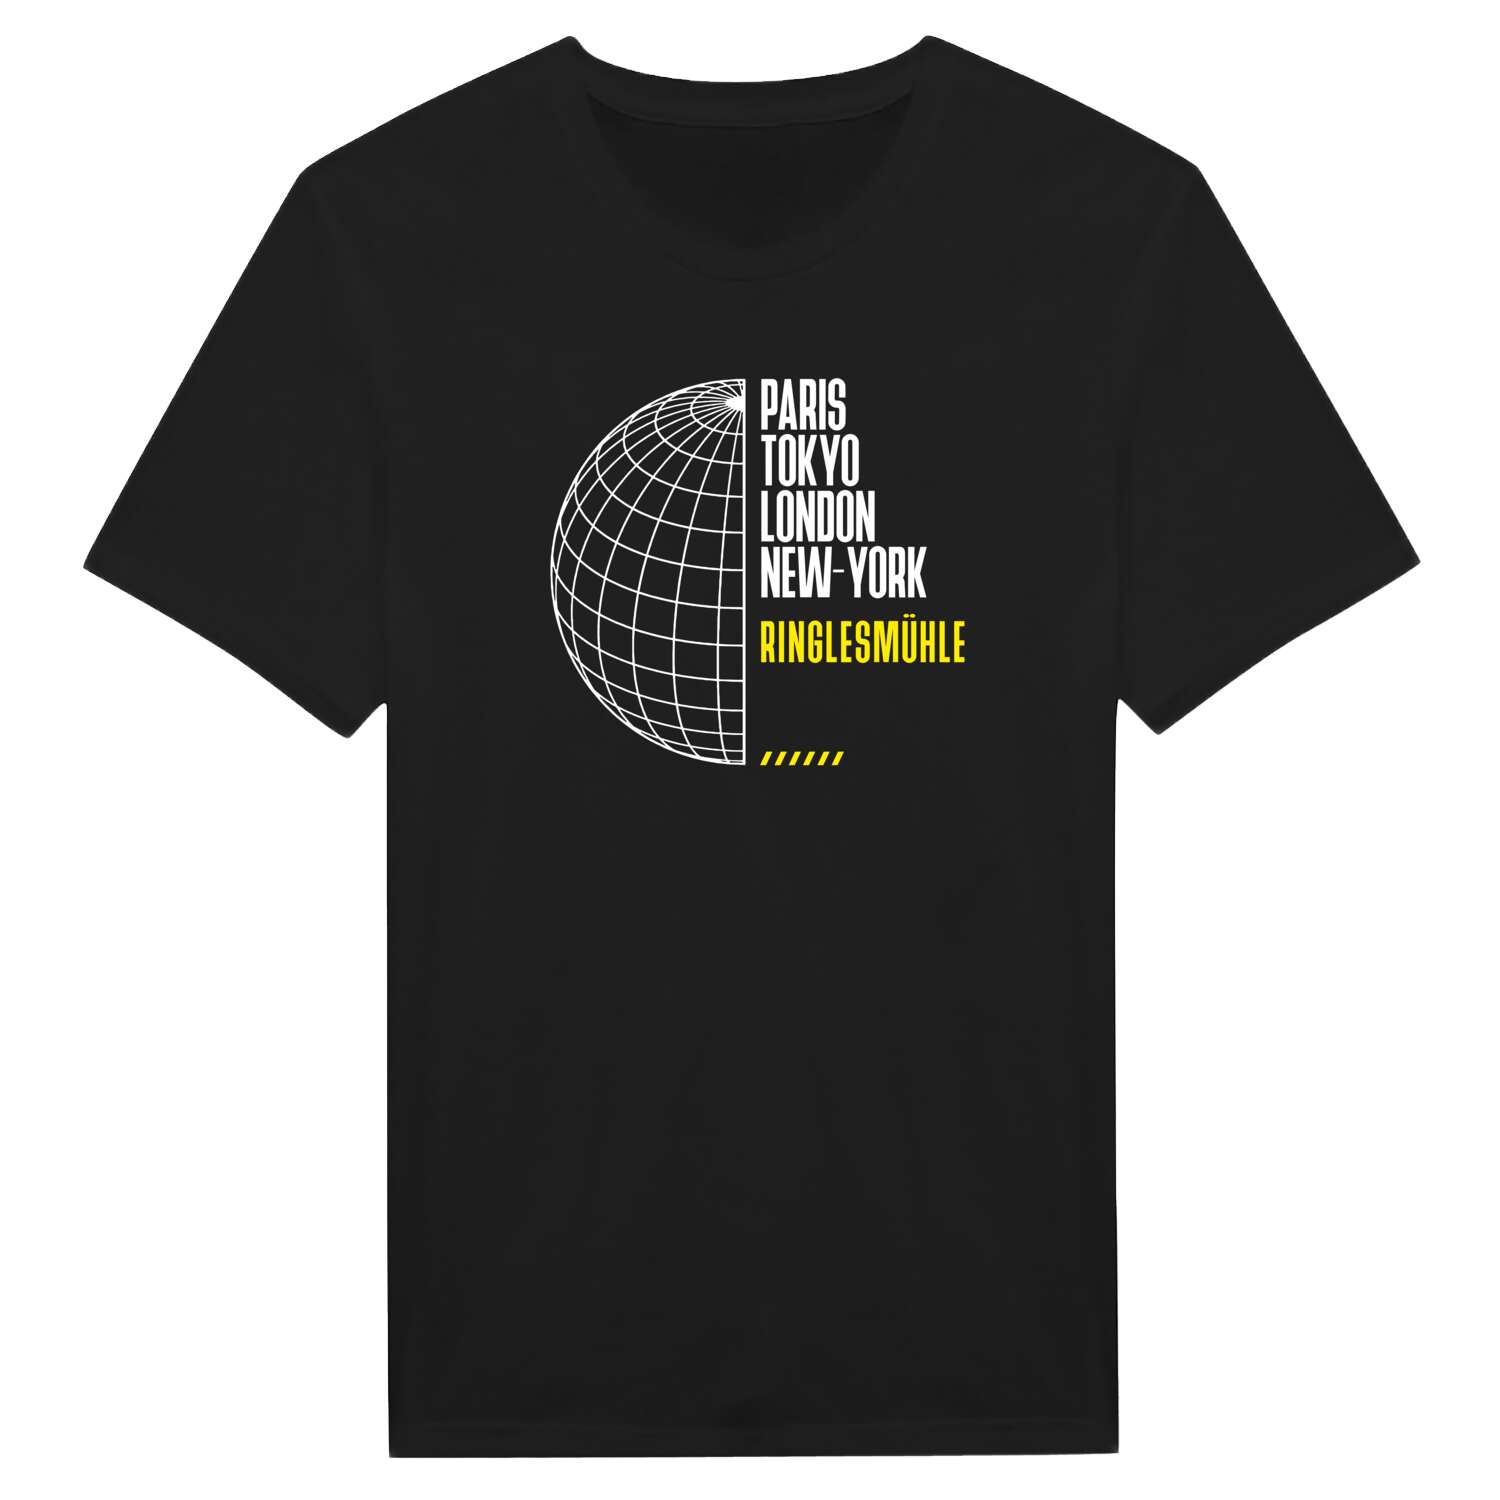 Ringlesmühle T-Shirt »Paris Tokyo London«